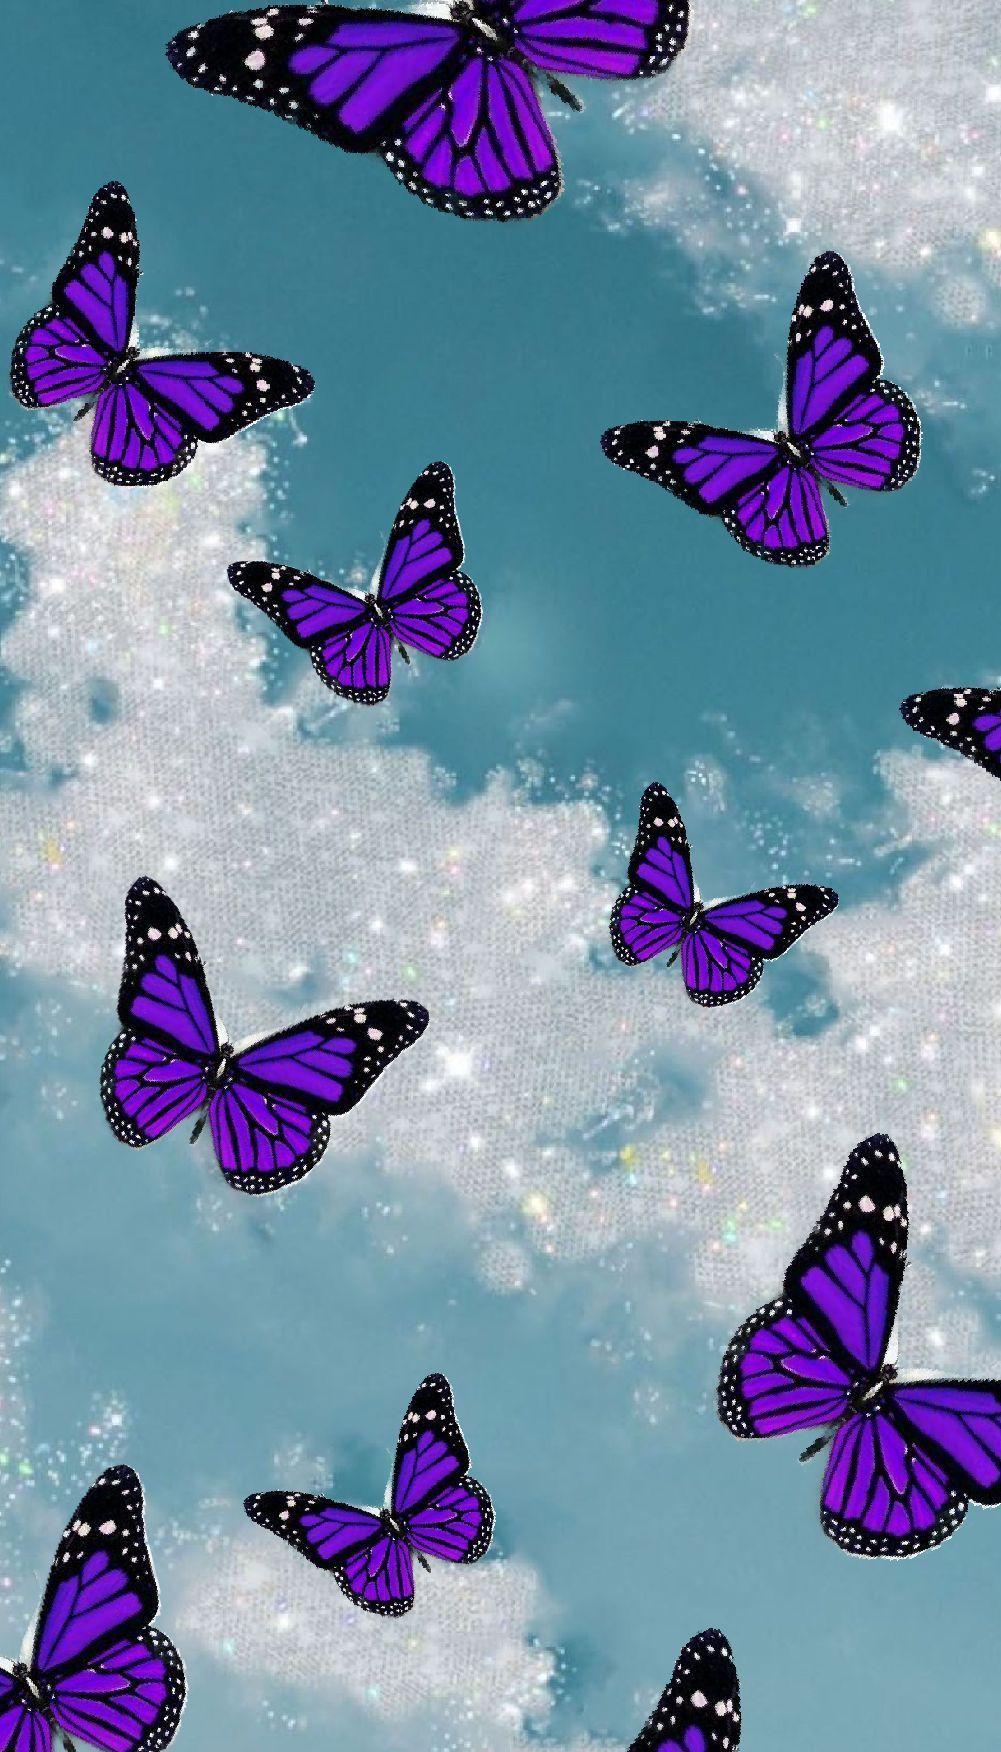 Nếu bạn đang tìm kiếm một tấm hình nền độc đáo cho máy tính của mình, hãy thử tìm ảnh hình nền bướm tím đầy sắc màu của chúng tôi. Với màu tím huyền bí và những chiếc bướm tuyệt đẹp, bạn sẽ có một nền tảng hoàn hảo để hiển thị văn bản và hình ảnh của mình.